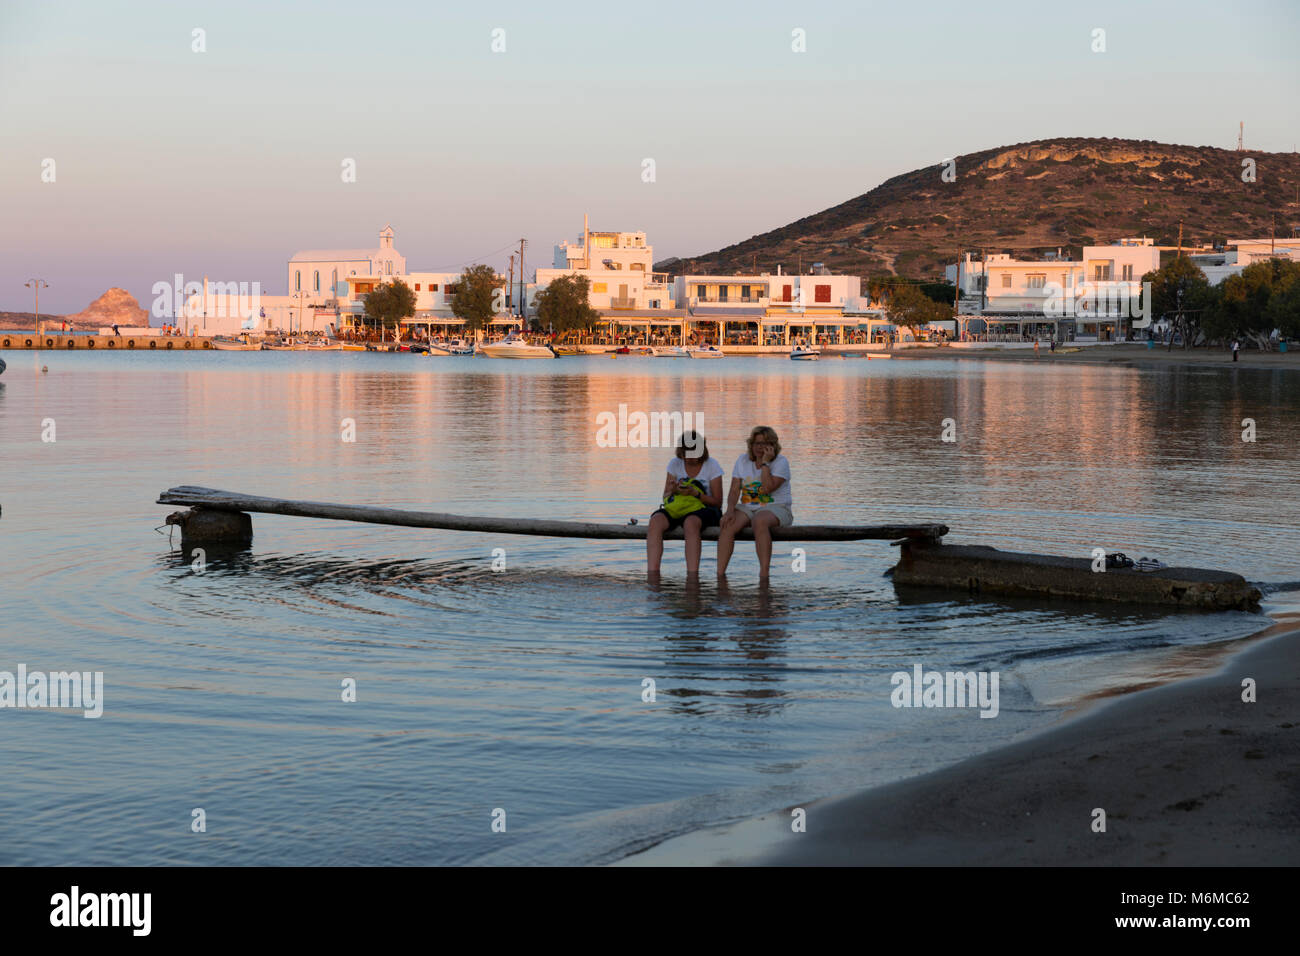 Afficher le long de plage avec 2 femmes assis sur la jetée au coucher du soleil, de Pollonia, Milos, Cyclades, Mer Égée, îles grecques, Grèce, Europe Banque D'Images